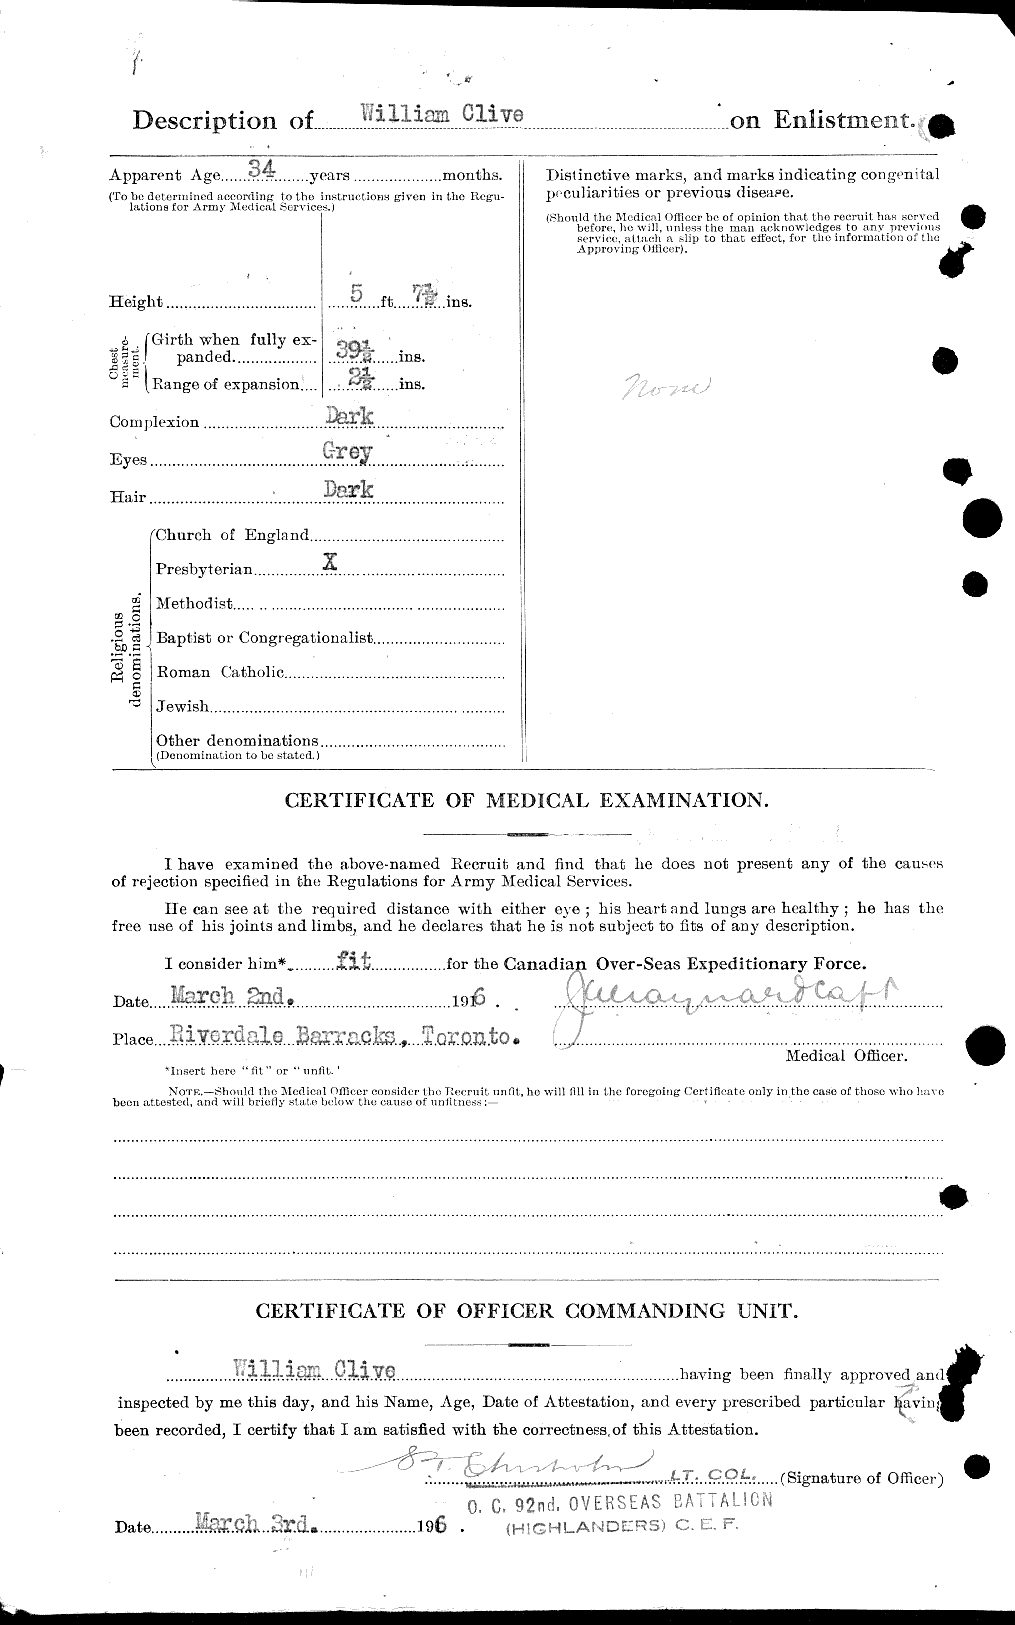 Dossiers du Personnel de la Première Guerre mondiale - CEC 025429b